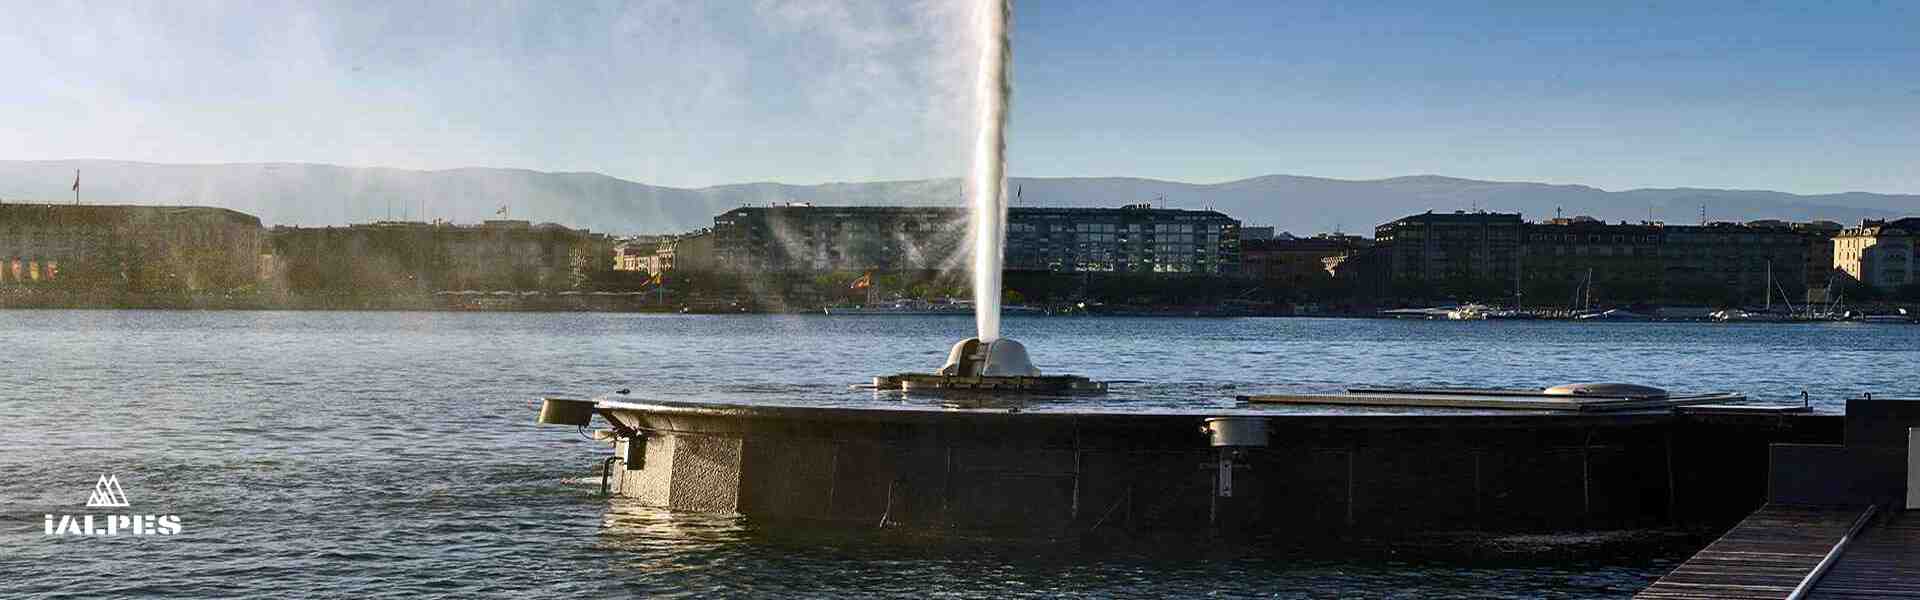 Jet d'eau et la rade de Genève